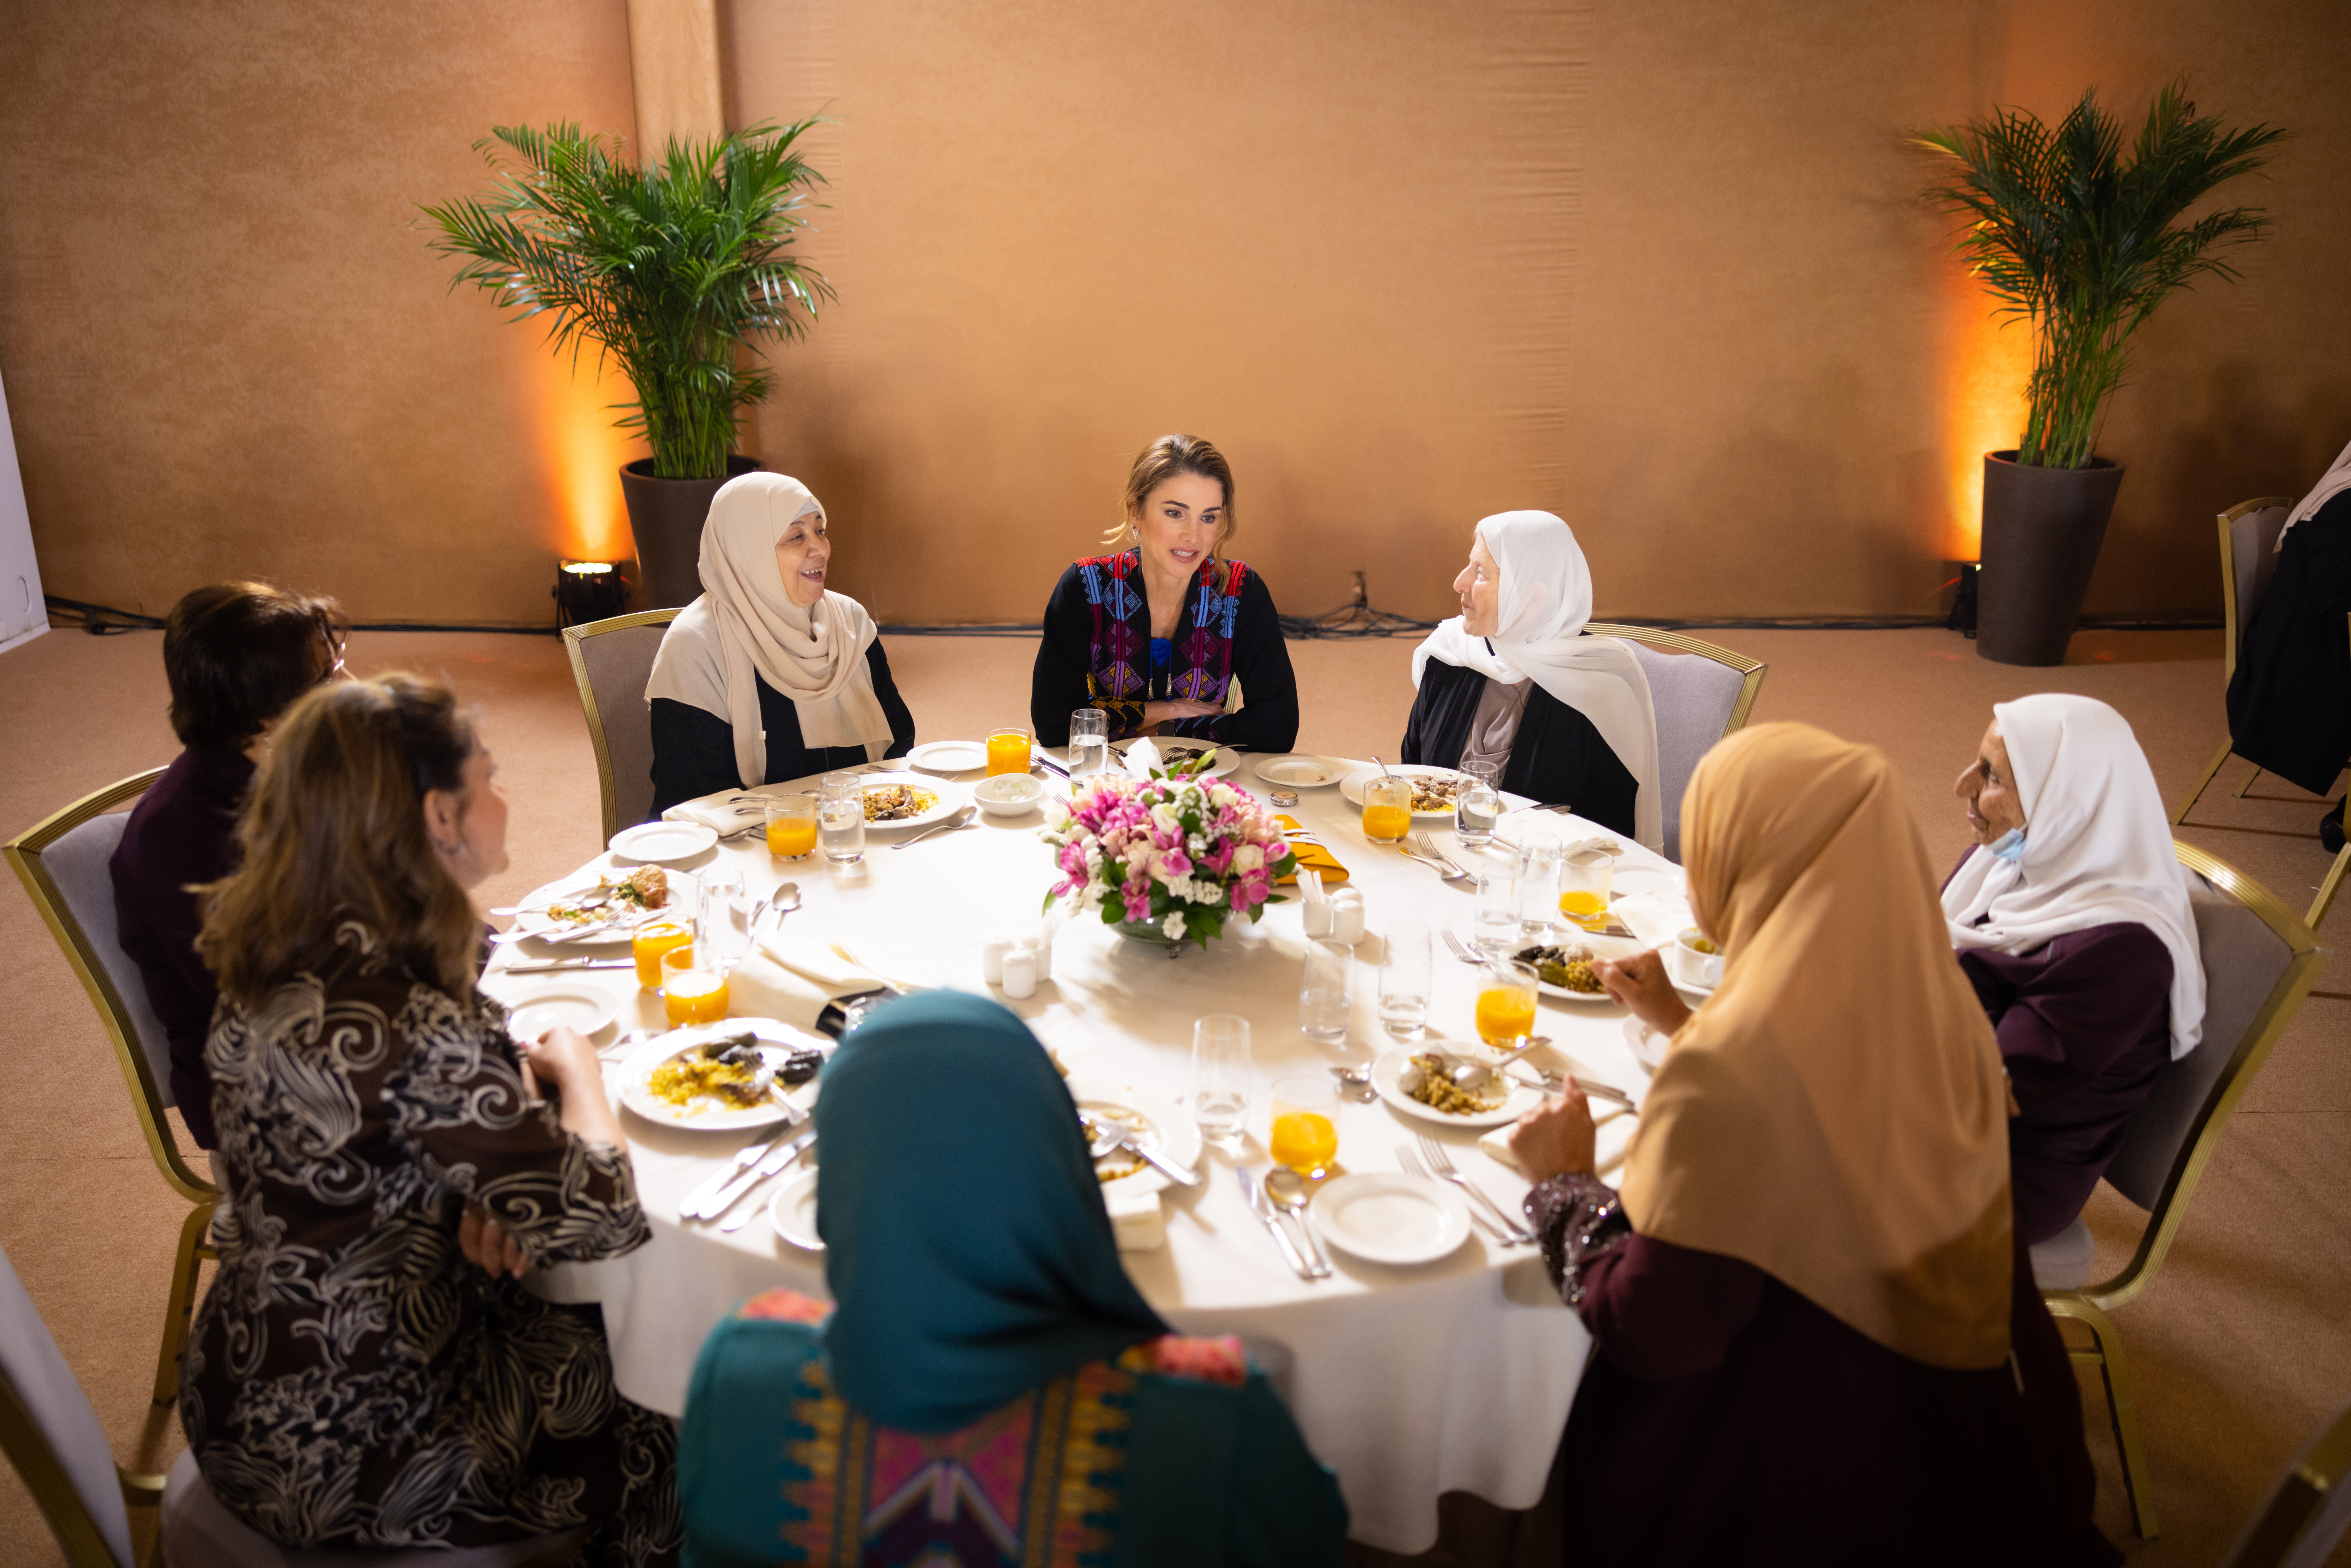 الملكة رانيا تقيم إفطاراً لعدد من السيدات بإربد